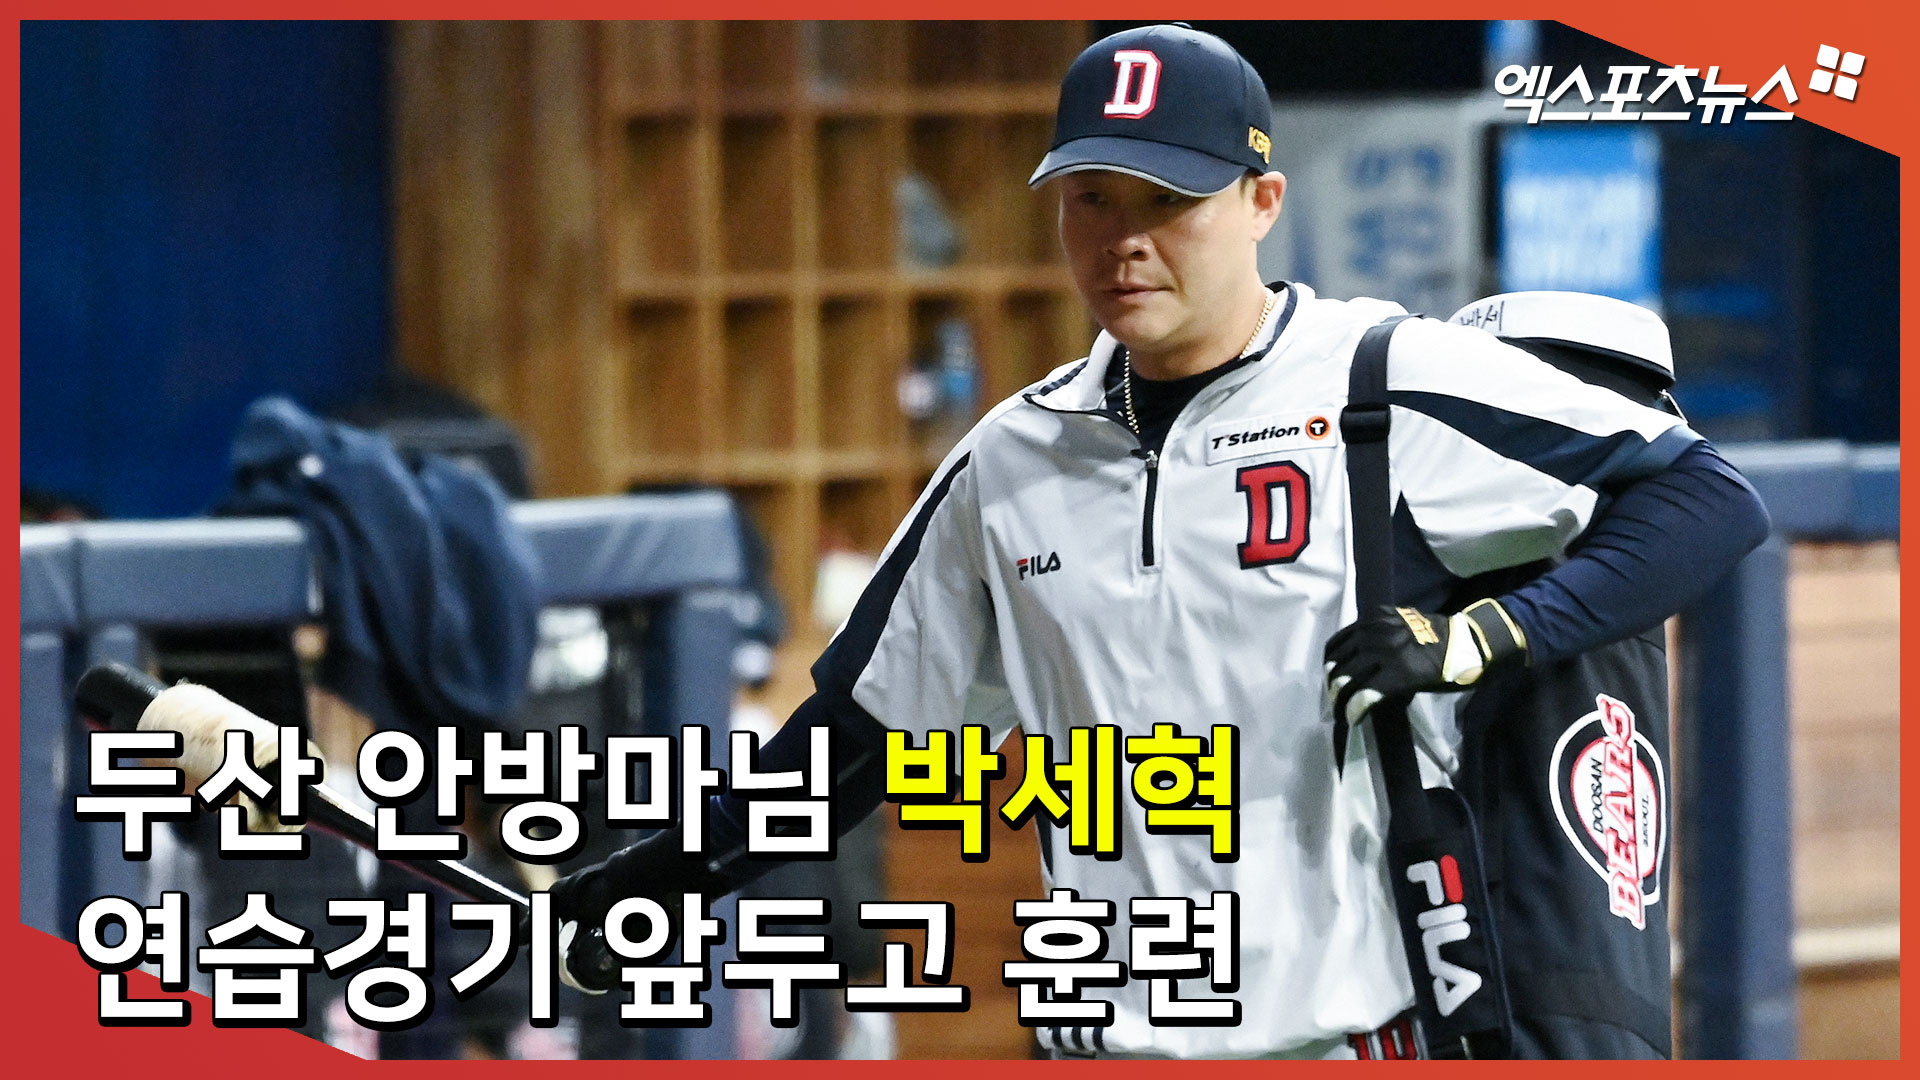 ‘두산 안방마님’ 박세혁, 연습경기 앞두고 훈련에 집중[엑’s 스케치]